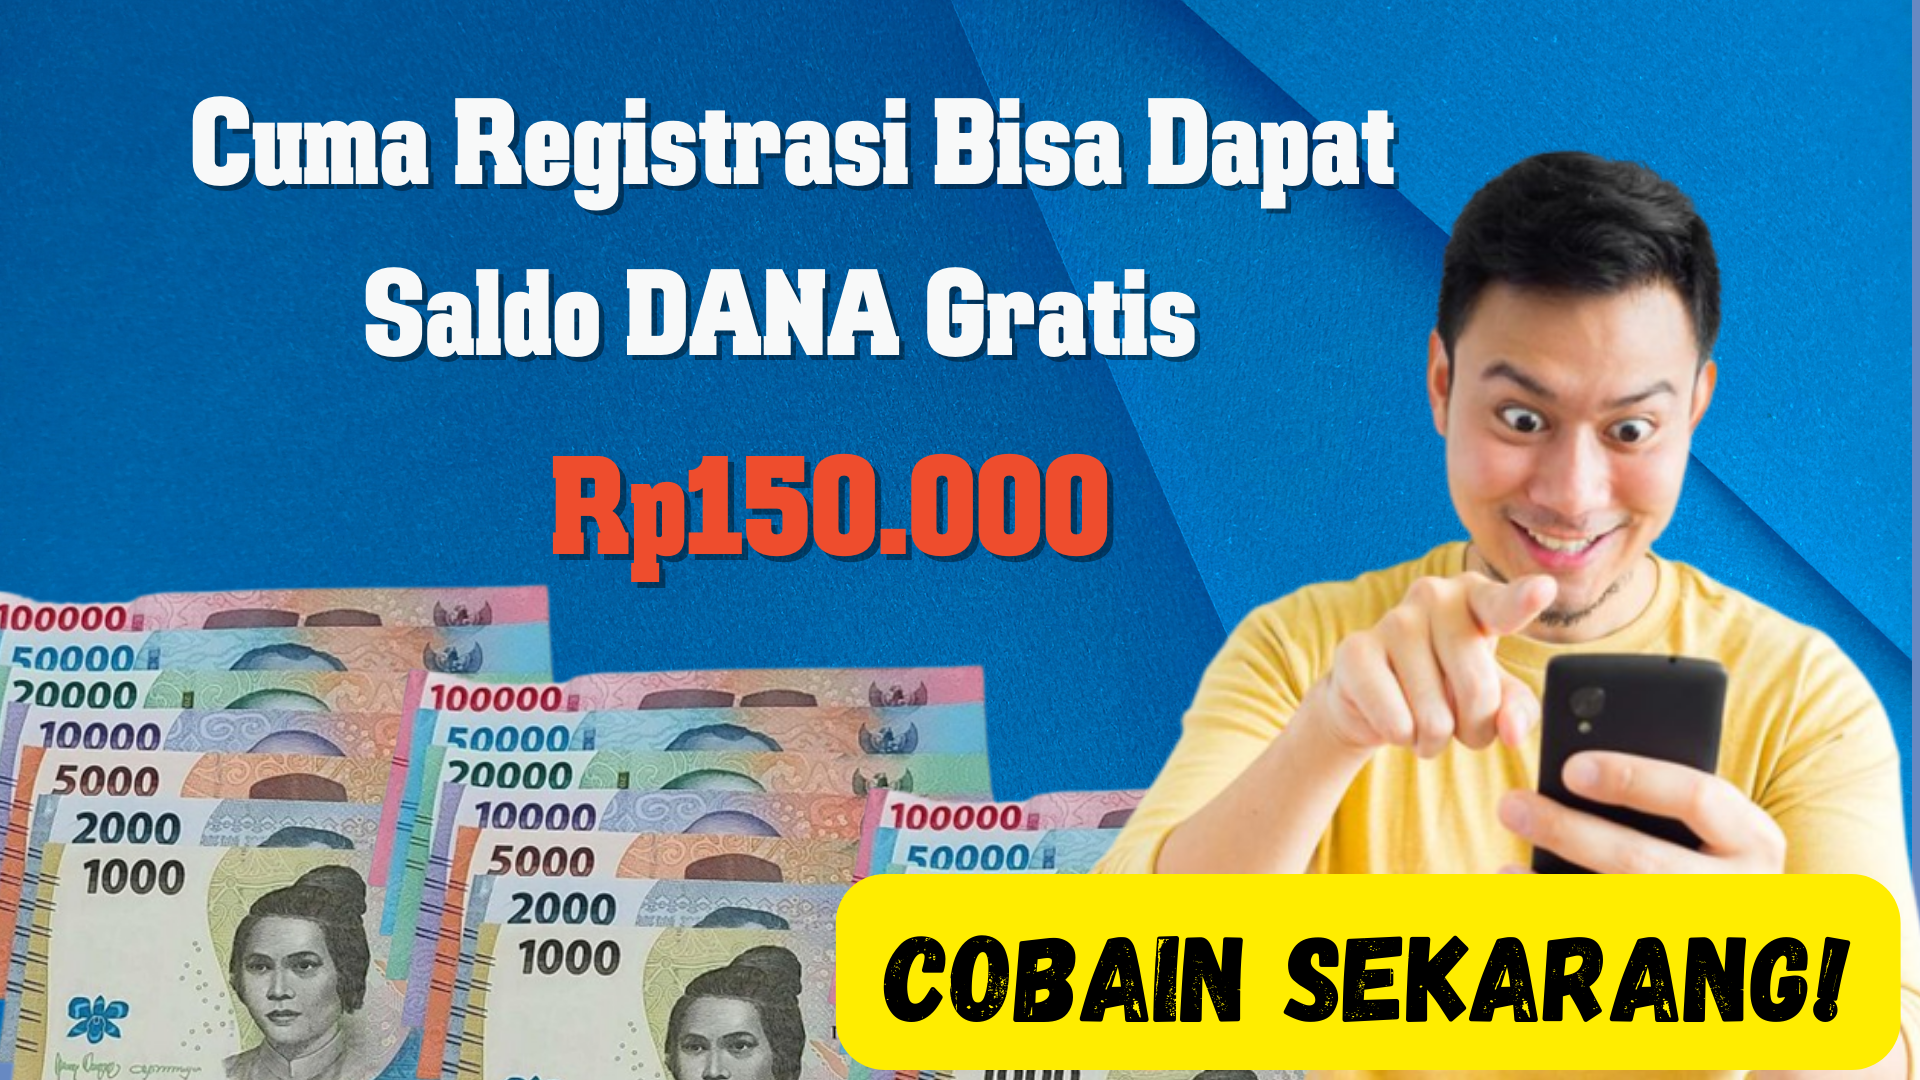 Cuma Registrasi Bisa Dapat Saldo DANA Gratis Rp150.000, Cobain Sekarang!